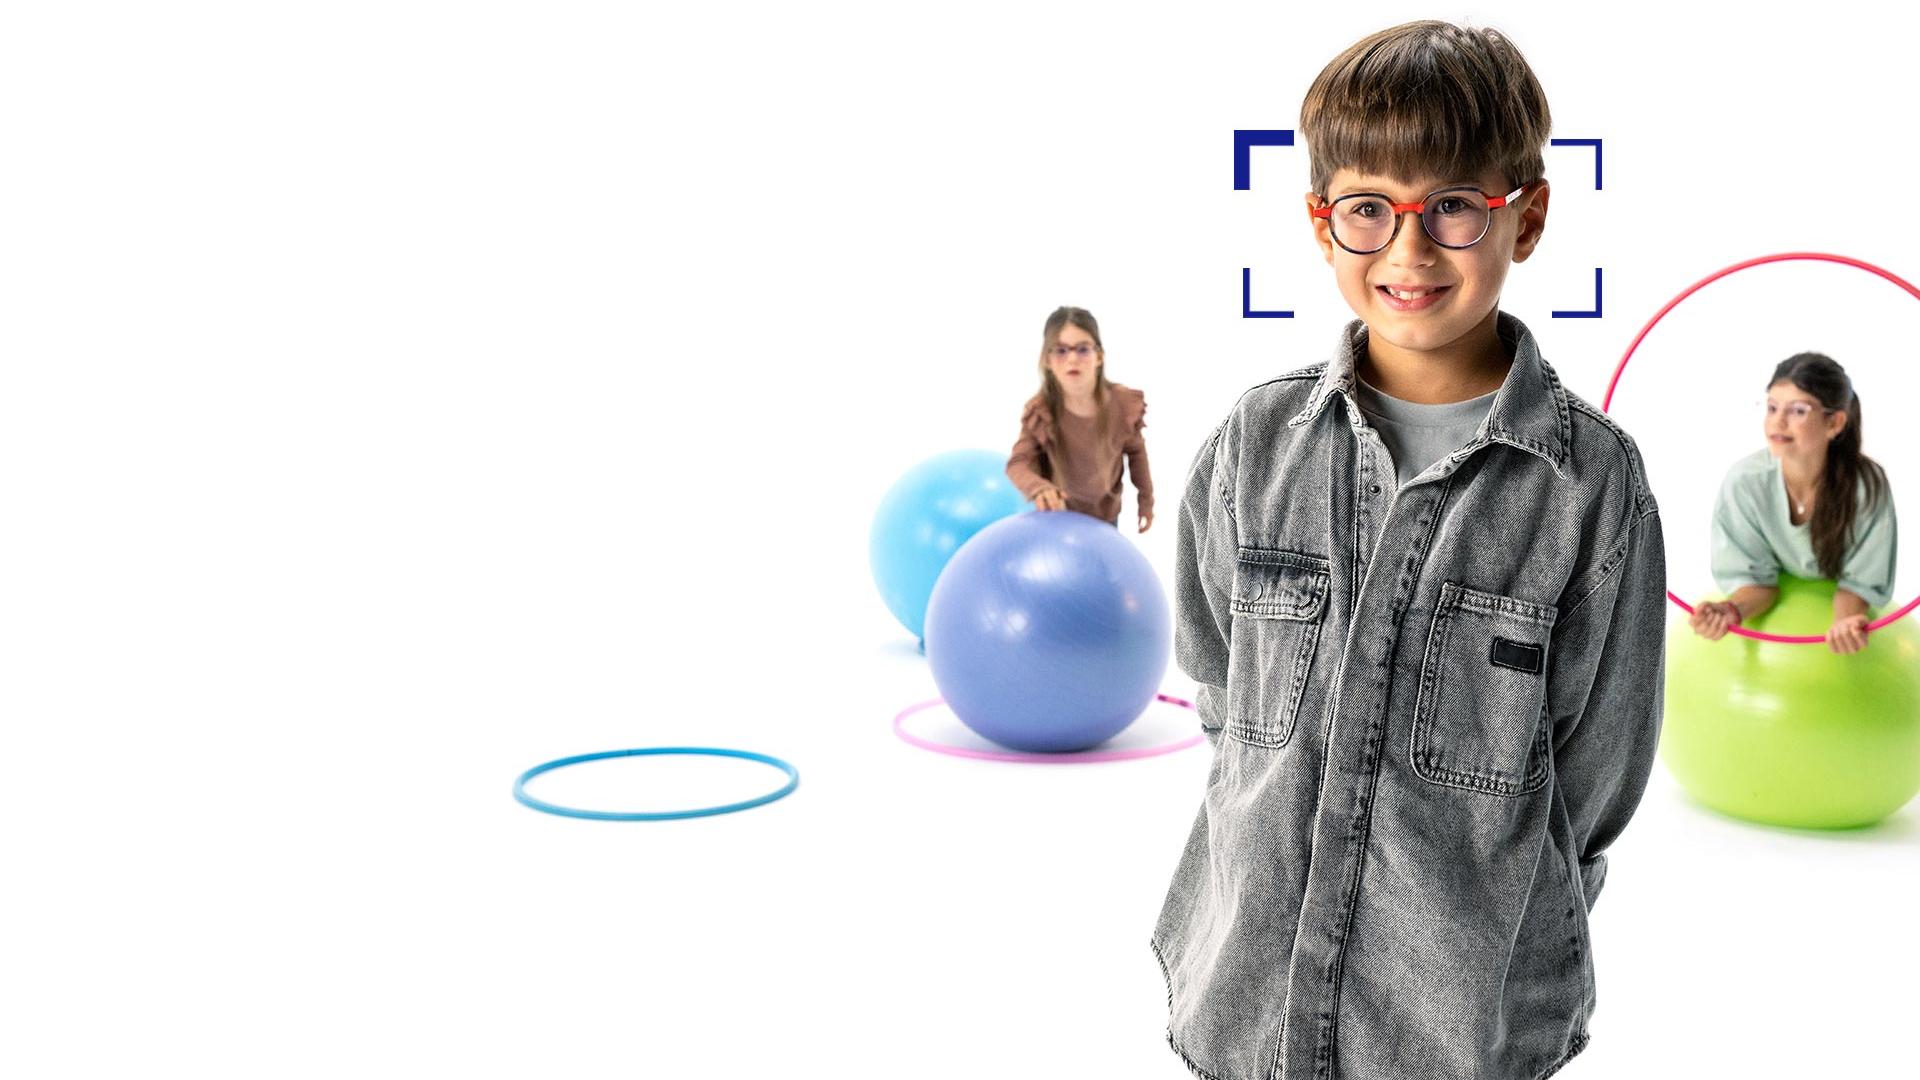 Brunhårig pojke med runda glasögon och ZEISS MyoCare-glas står i förgrunden och ler mot kameran. I bakgrunden leker två flickor, som bär ZEISS MyoCare-glas, med rockringar och pilatesbollar.